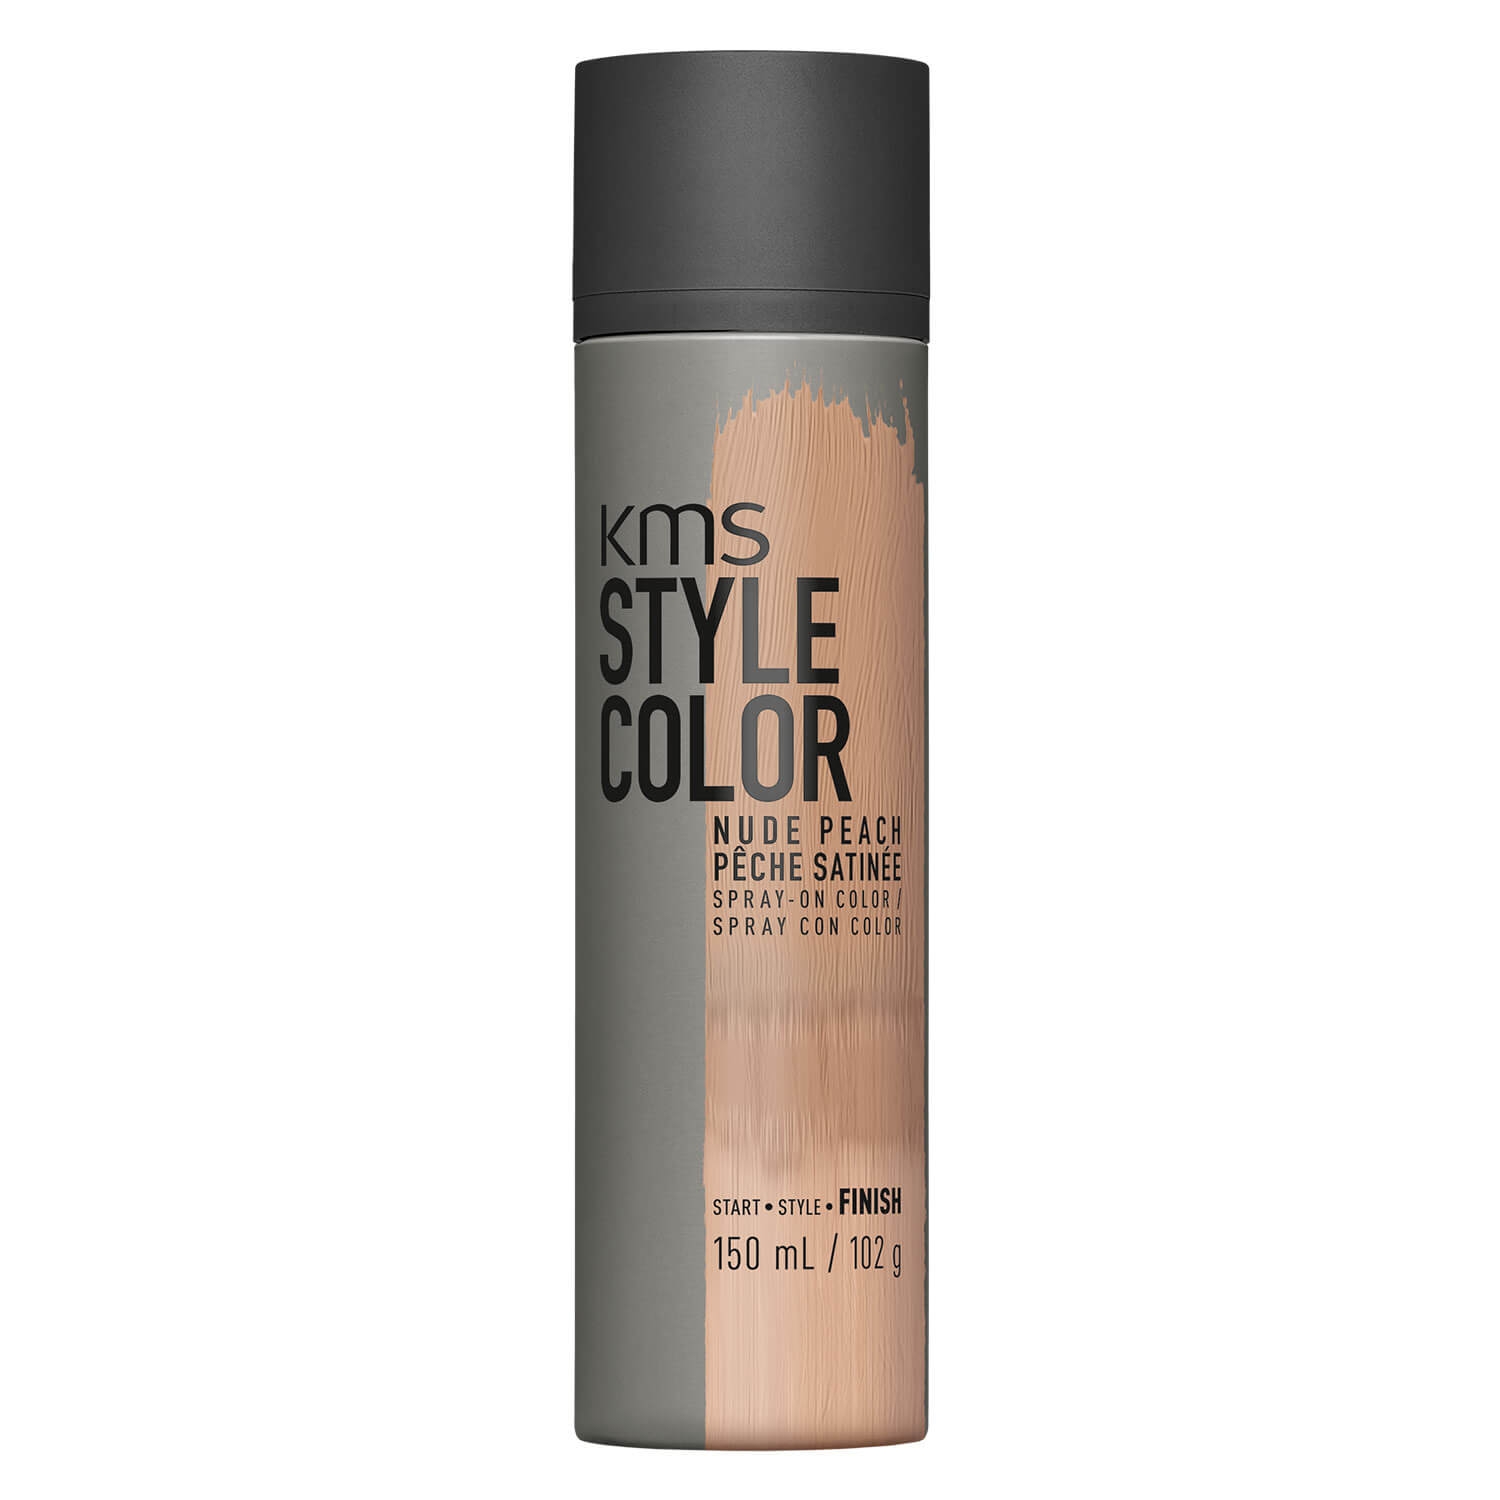 Produktbild von Stylecolor - Nude Peach